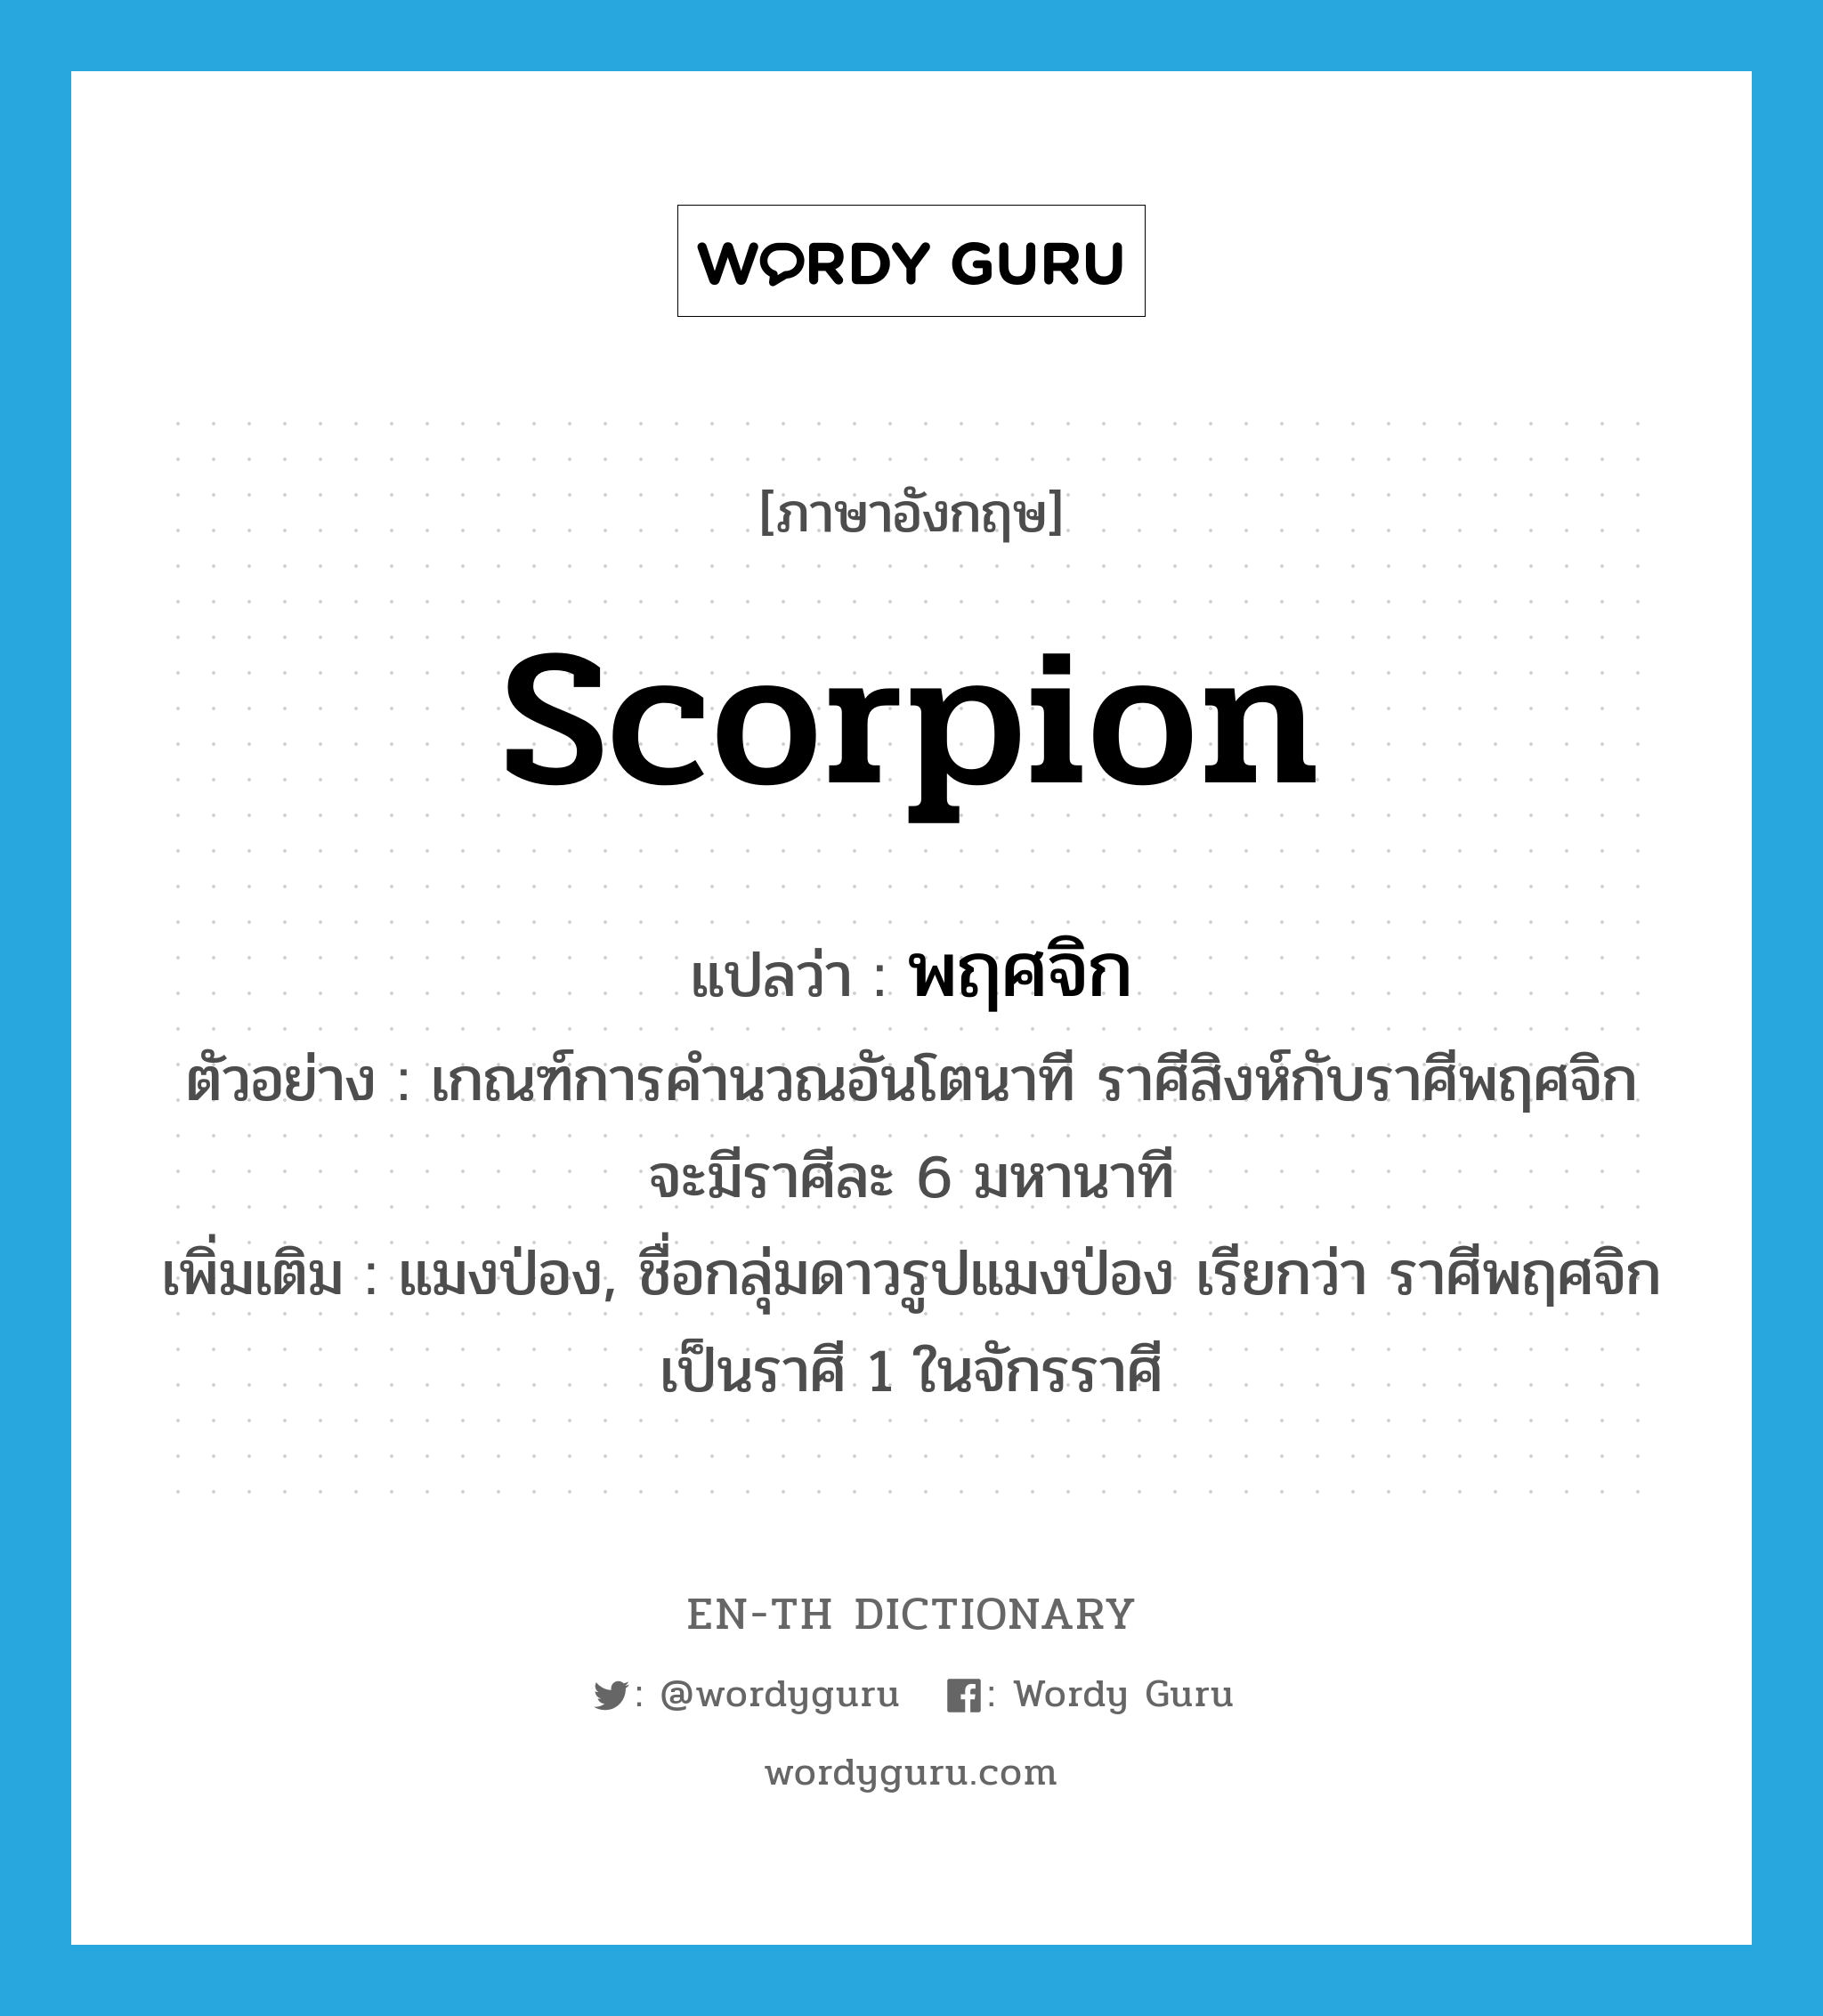 scorpion แปลว่า?, คำศัพท์ภาษาอังกฤษ scorpion แปลว่า พฤศจิก ประเภท N ตัวอย่าง เกณฑ์การคำนวณอันโตนาที ราศีสิงห์กับราศีพฤศจิกจะมีราศีละ 6 มหานาที เพิ่มเติม แมงป่อง, ชื่อกลุ่มดาวรูปแมงป่อง เรียกว่า ราศีพฤศจิก เป็นราศี 1 ในจักรราศี หมวด N